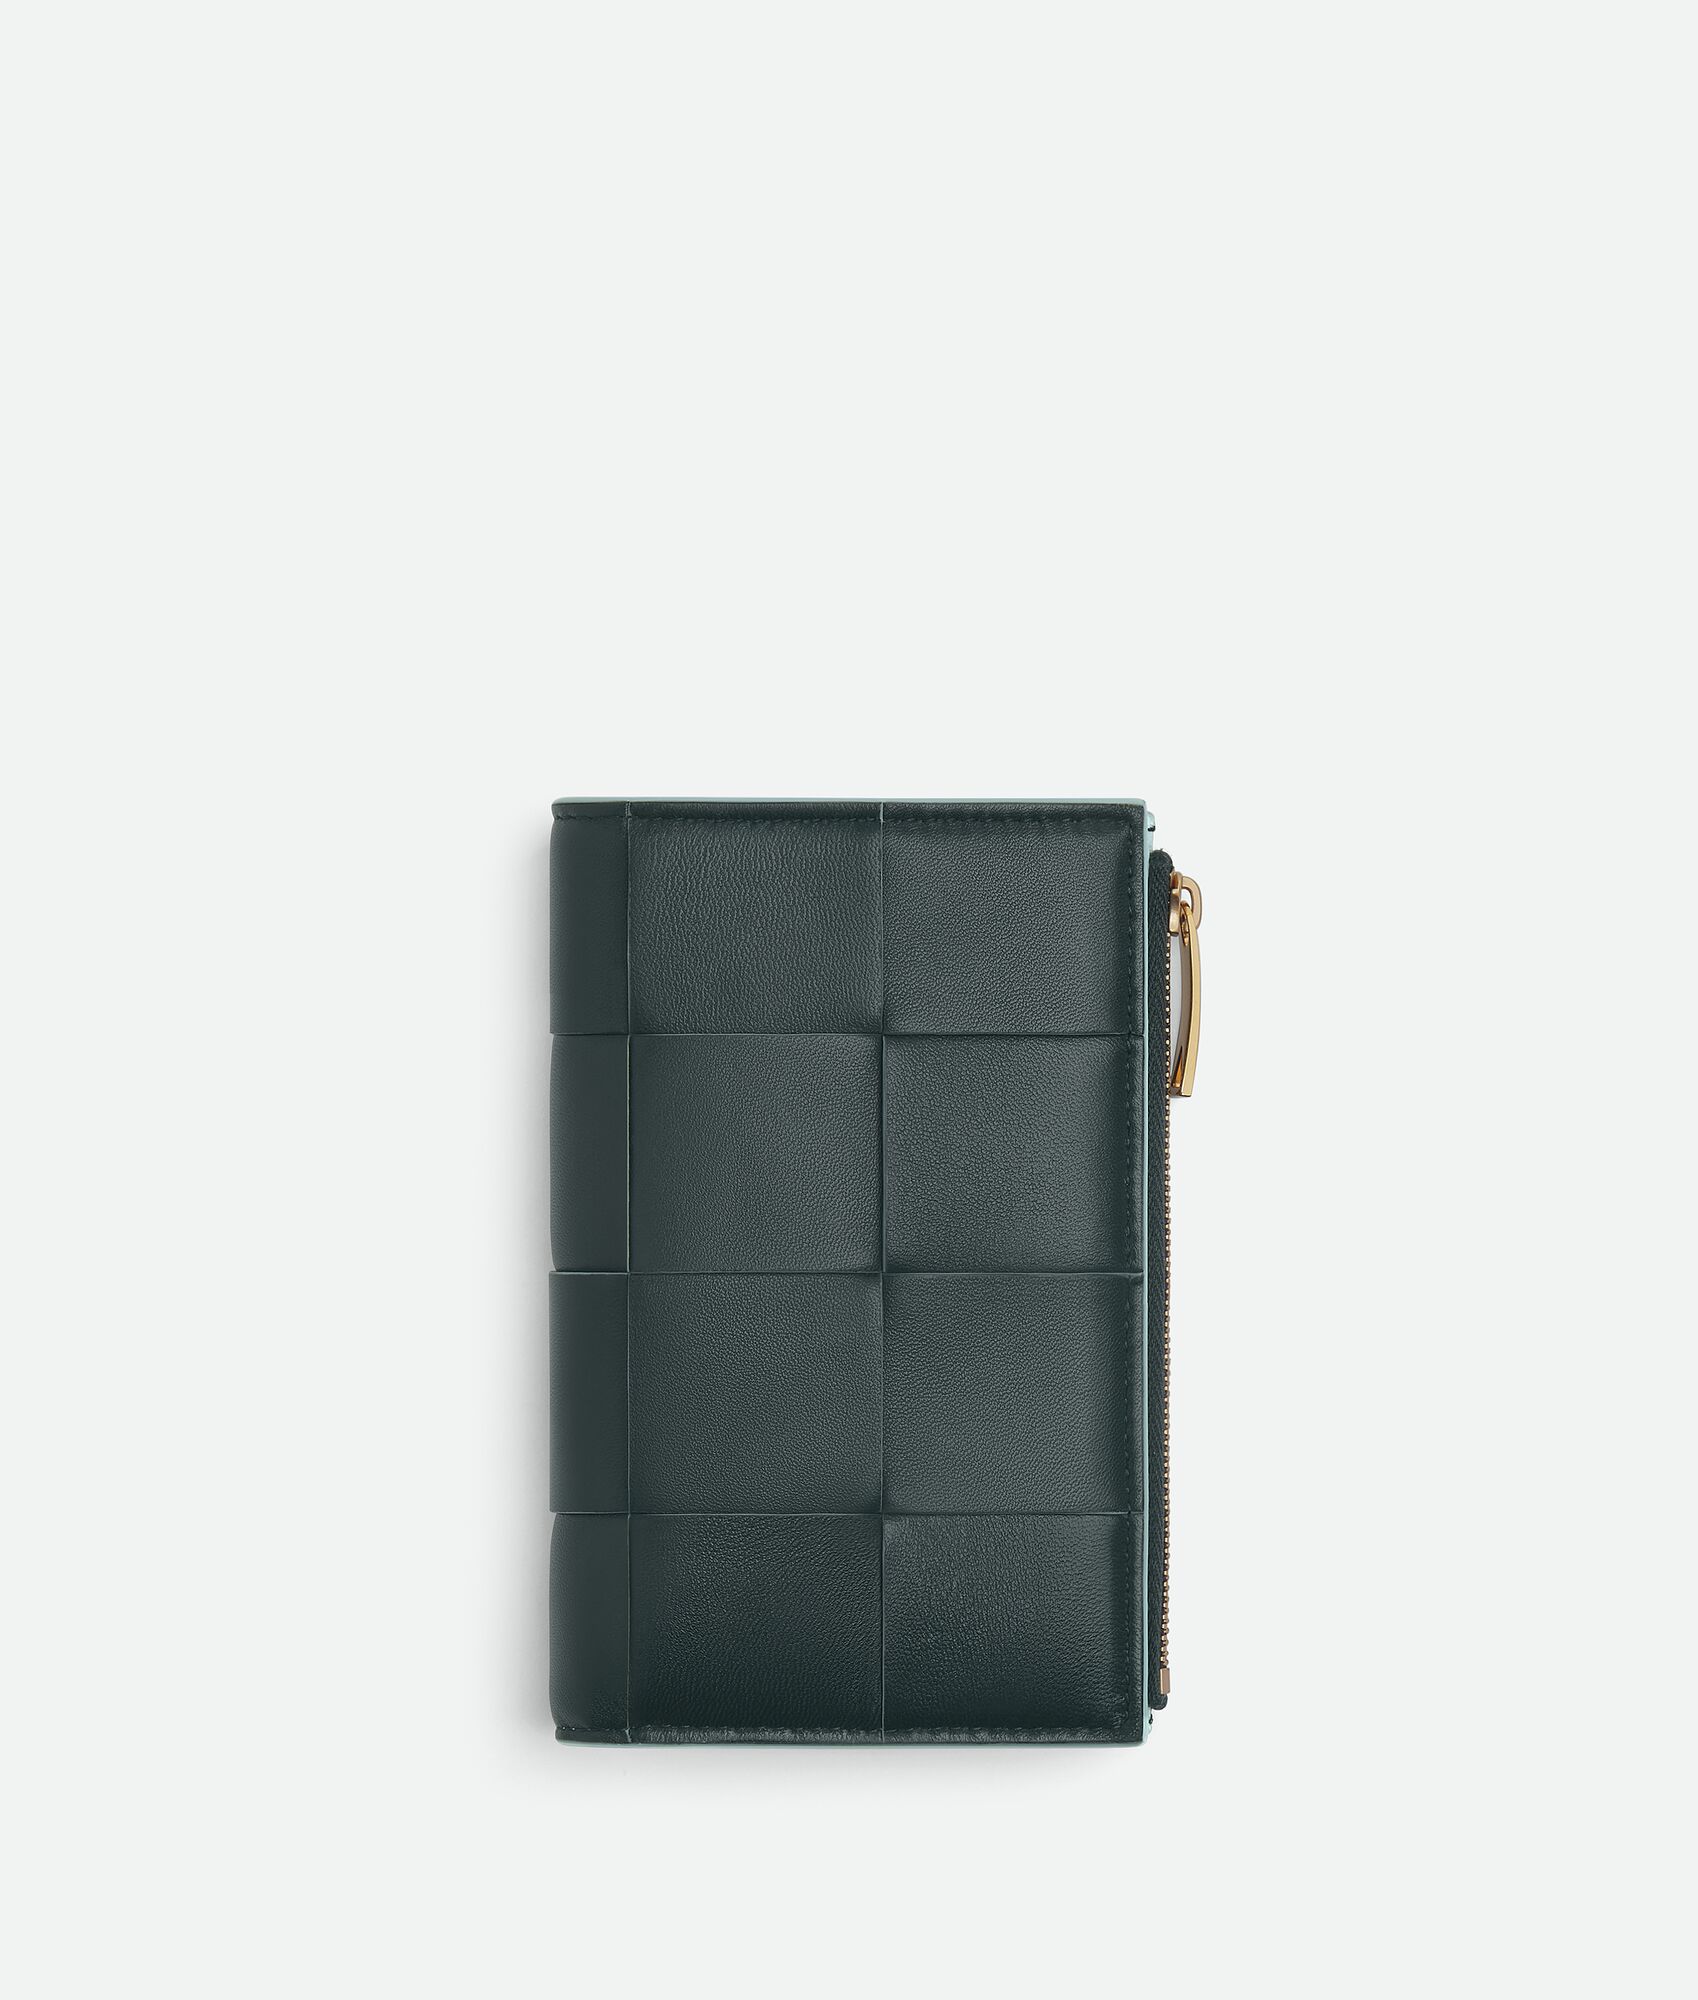 40代女性におすすめなセンスのいいレディース財布は、ボッテガ・ヴェネタのミディアム カセット 二つ折りファスナーウォレット